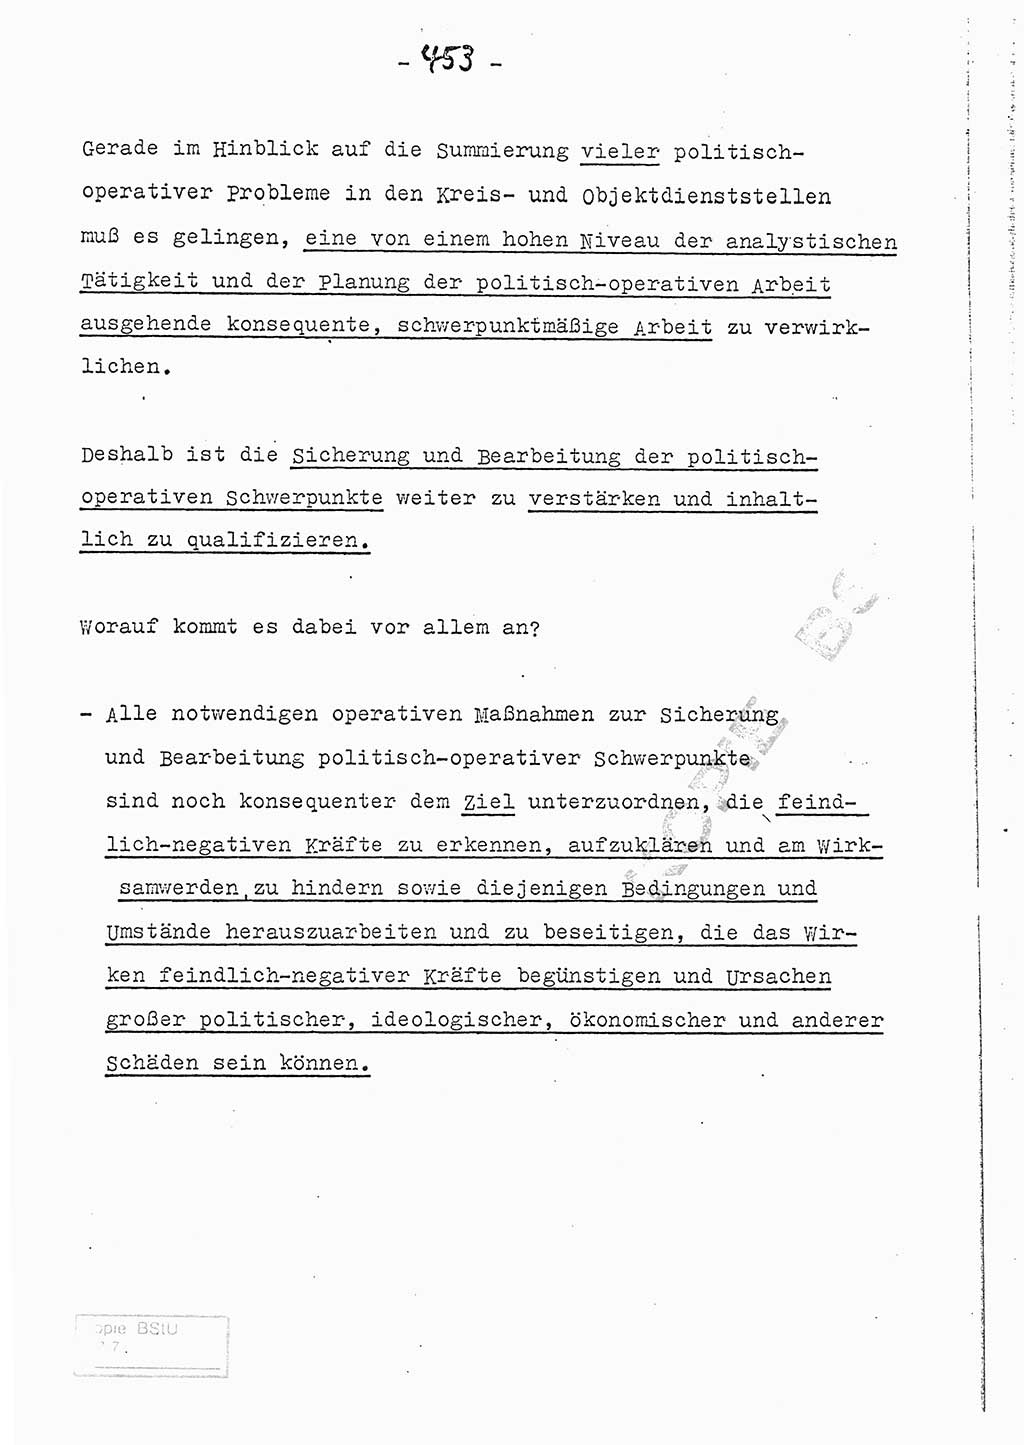 Referat (Entwurf) des Genossen Minister (Generaloberst Erich Mielke) auf der Dienstkonferenz 1972, Ministerium für Staatssicherheit (MfS) [Deutsche Demokratische Republik (DDR)], Der Minister, Geheime Verschlußsache (GVS) 008-150/72, Berlin 25.2.1972, Seite 453 (Ref. Entw. DK MfS DDR Min. GVS 008-150/72 1972, S. 453)